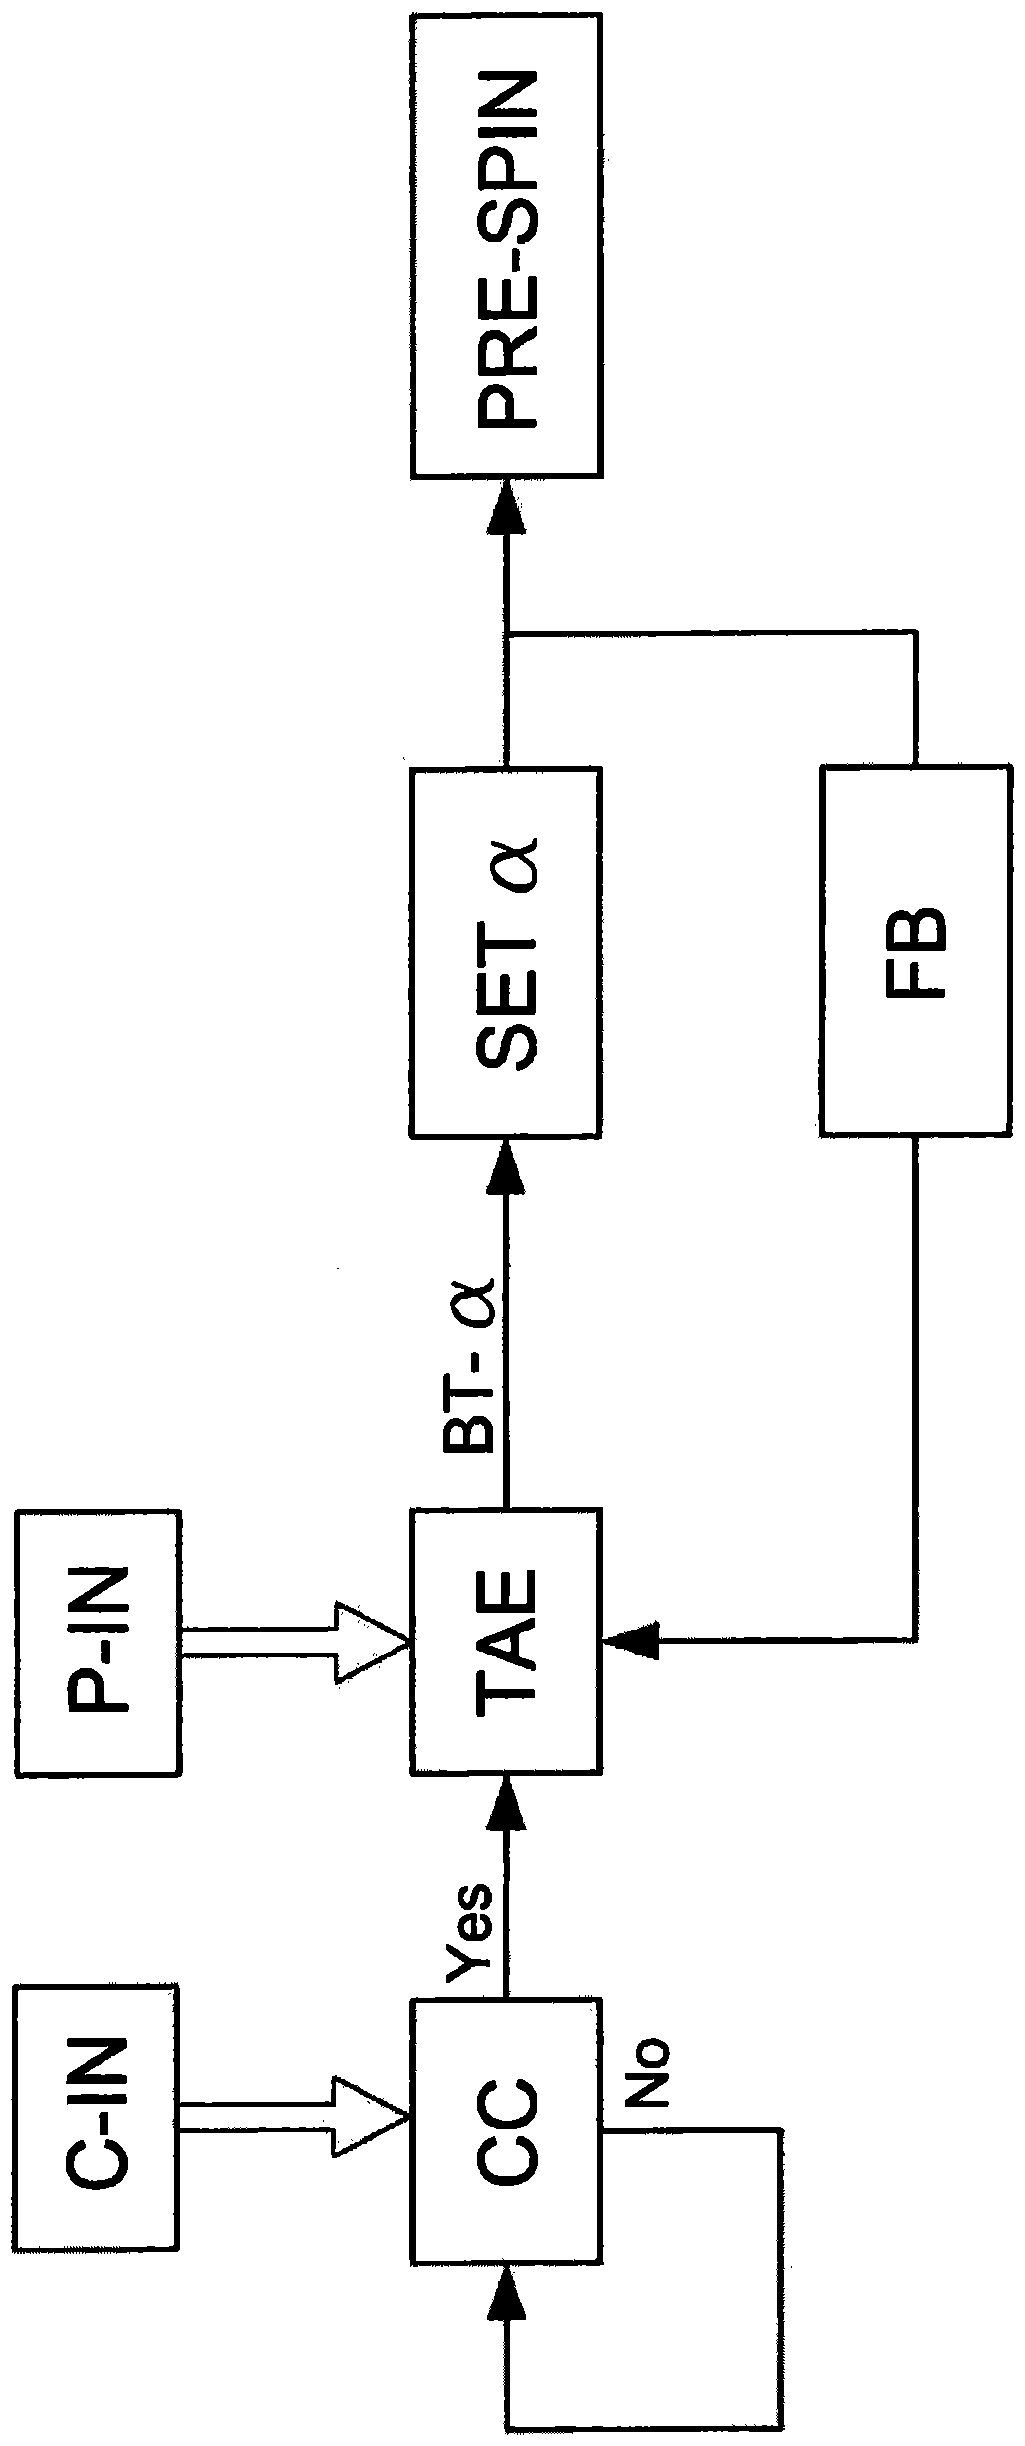 Compressor pre-rotation control method